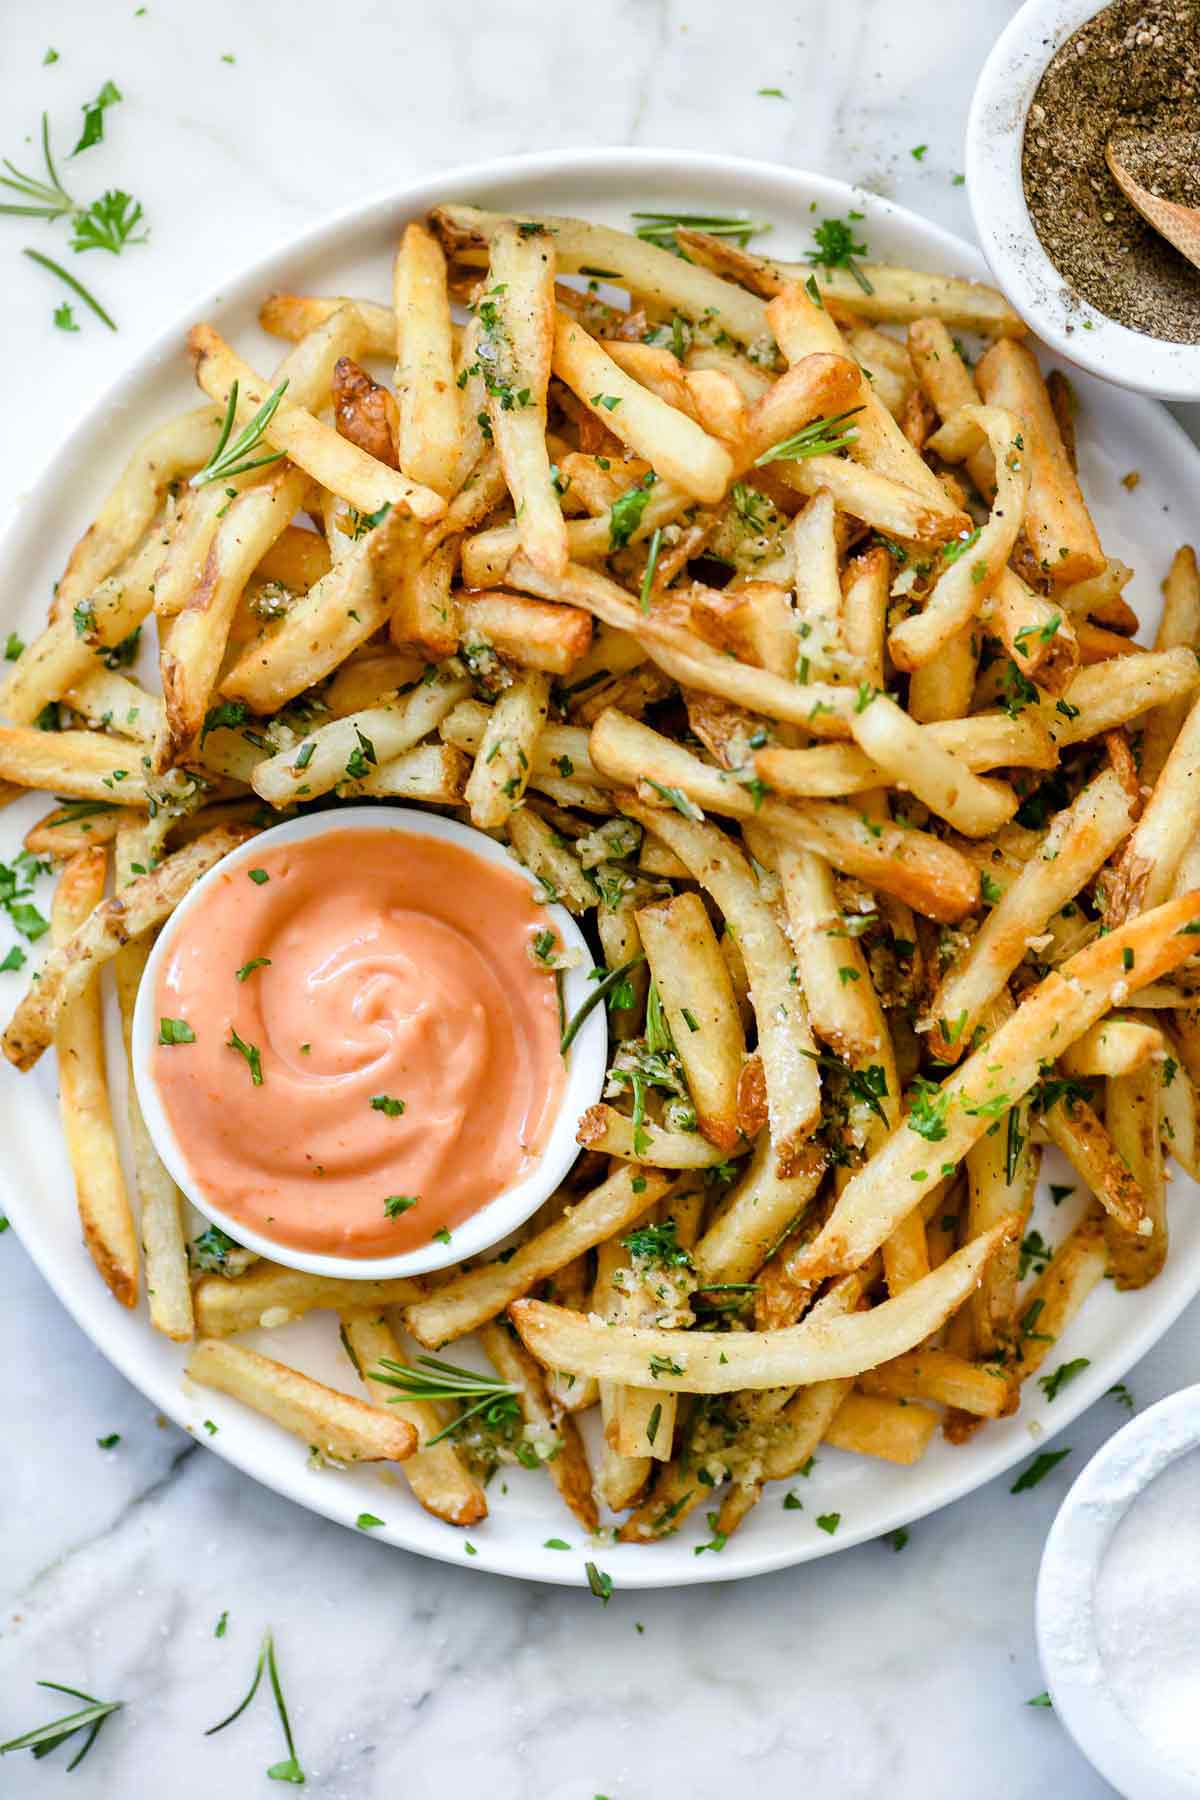 Killer Garlic Fries with Rosemary | foodiecrush.com #fries #frenchfries #frenchfries #garlic #recipes